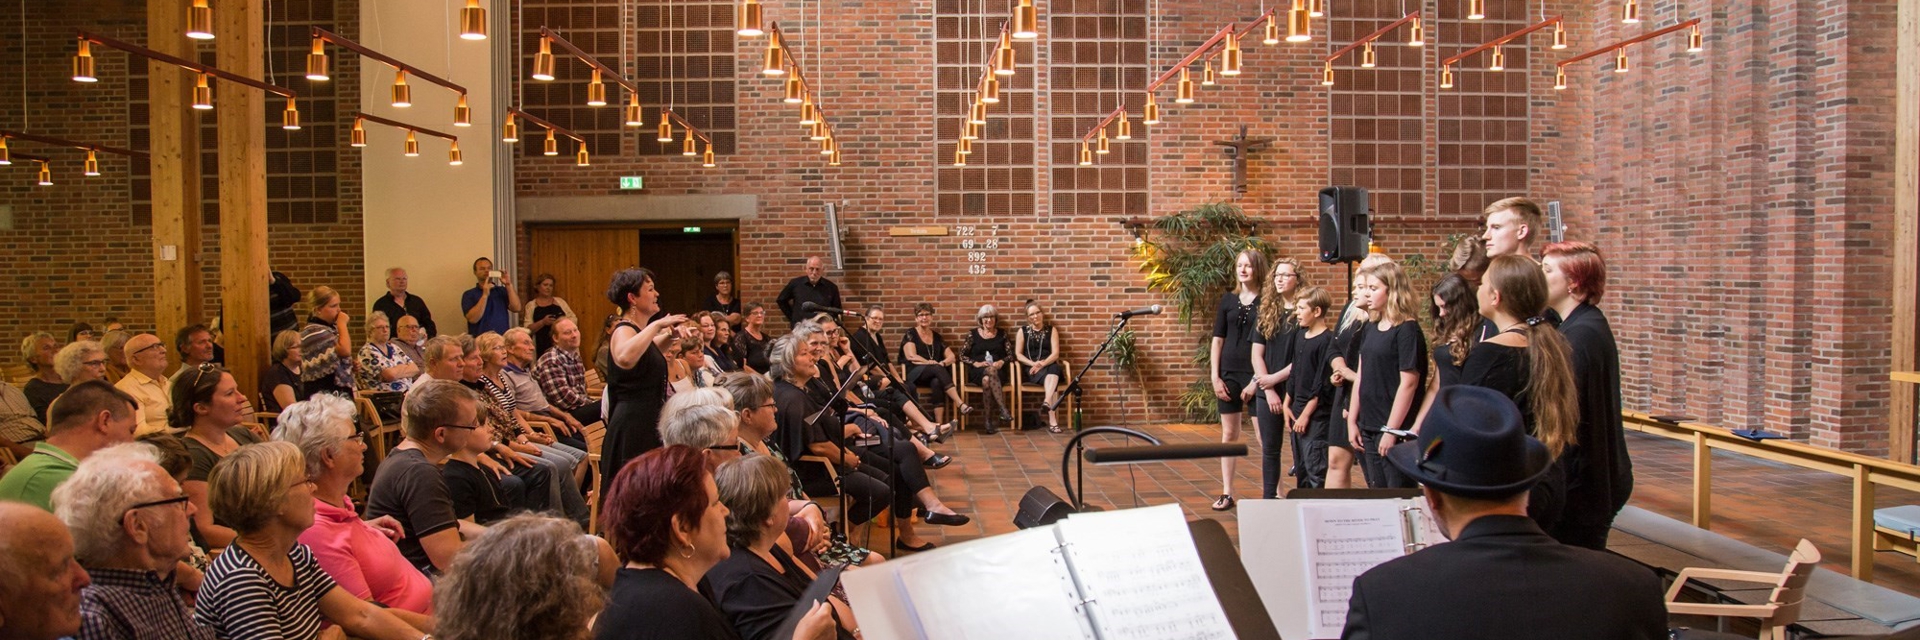 Et pigekor synger foran publikum i en kirke